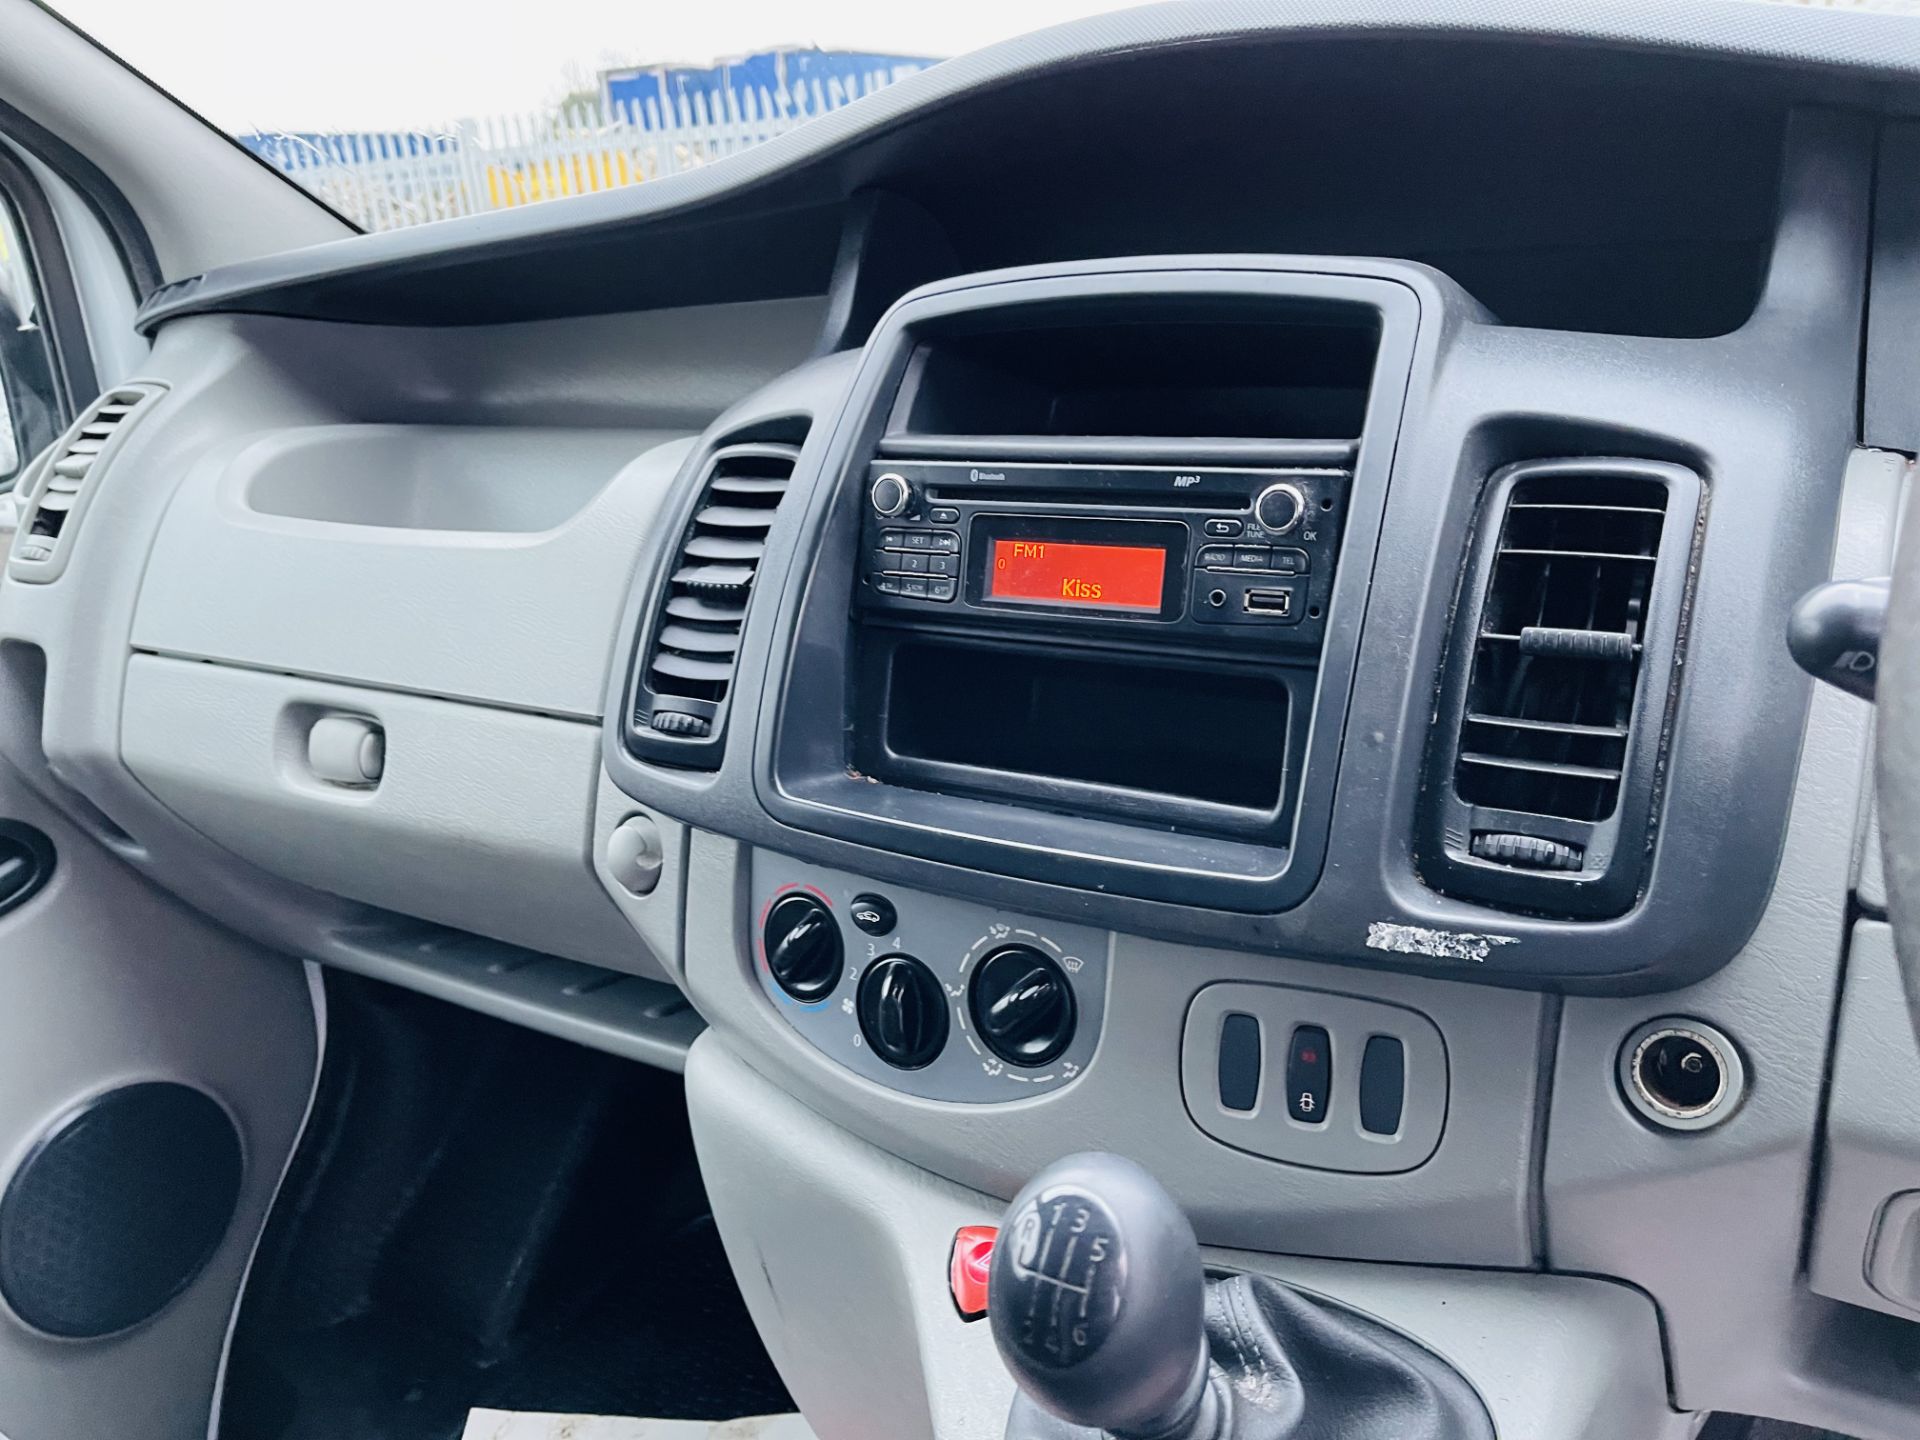 Vauxhall Vivaro 2.0 CDTI 2900 LWB 2014 '14 Reg' Panel Van - Bluetooth Pack - Image 21 of 22